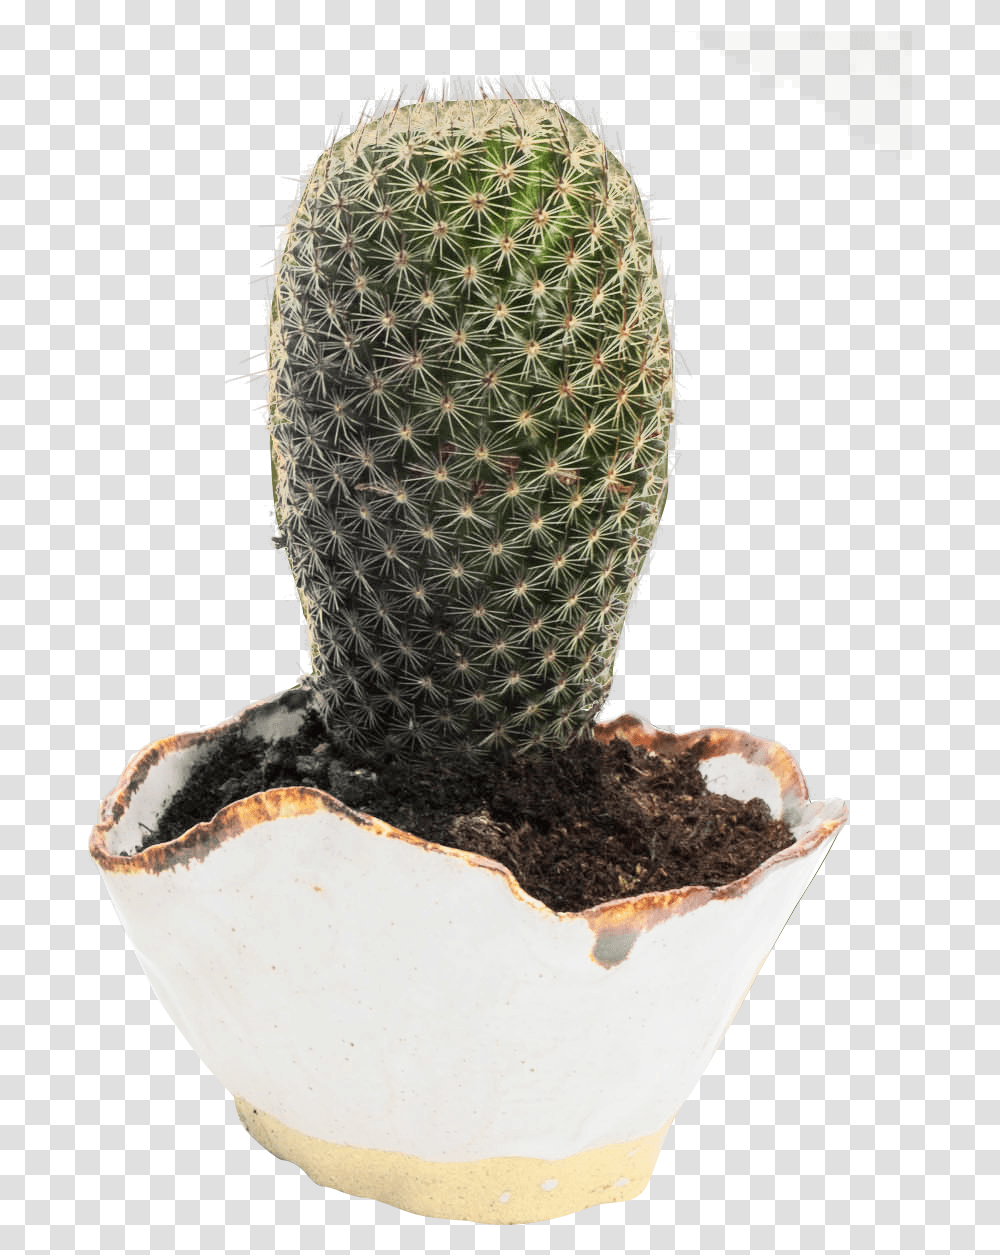 Cactus Image Cactus Flower Pot Hd, Plant, Tree Transparent Png